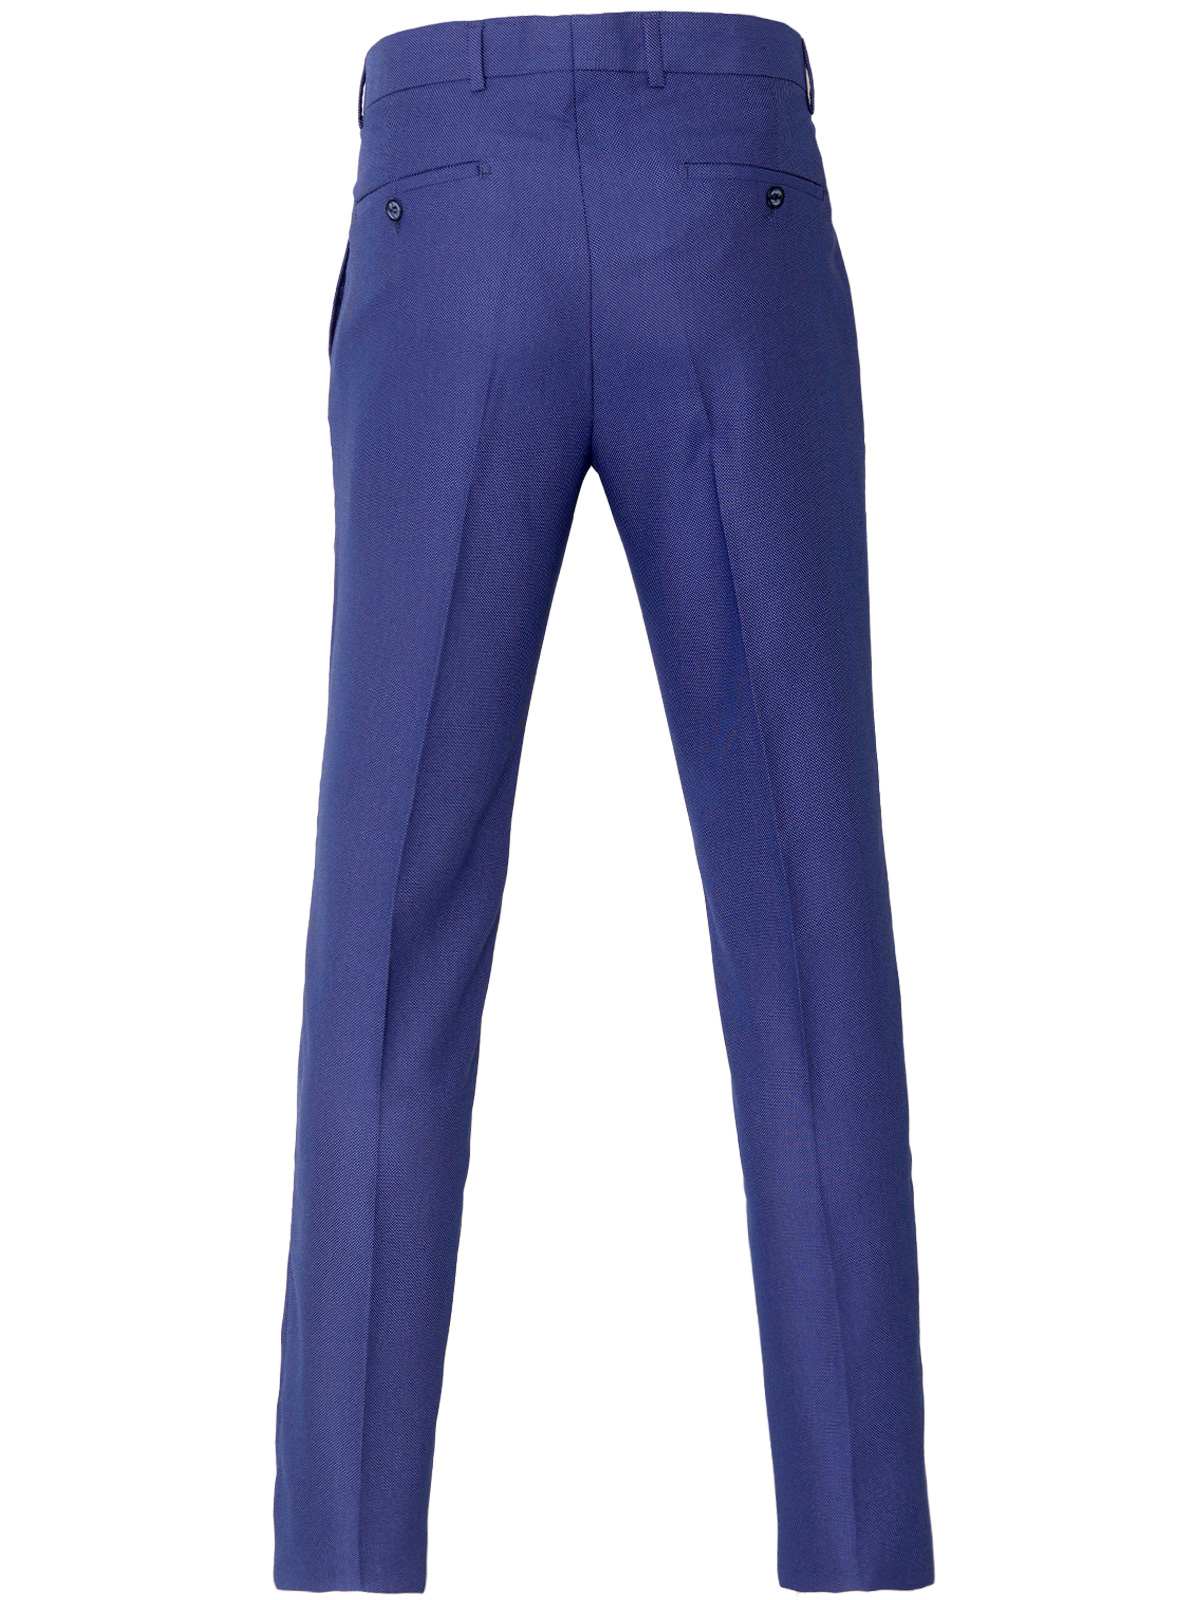 Pantaloni pentru bărbați în albastru cla - 63341 € 62.99 img2